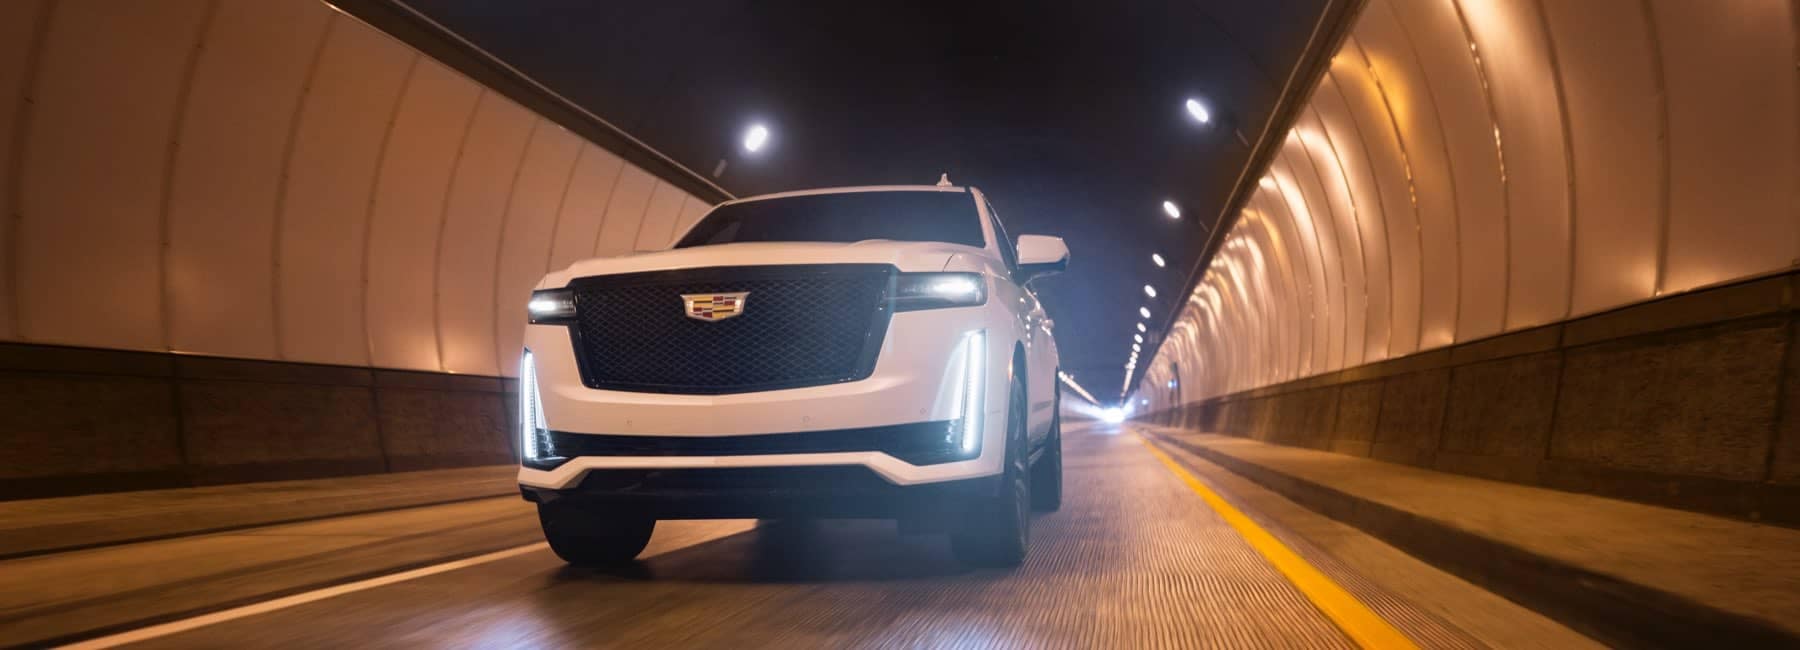 2021 Cadillac Escalade driving through tunnel